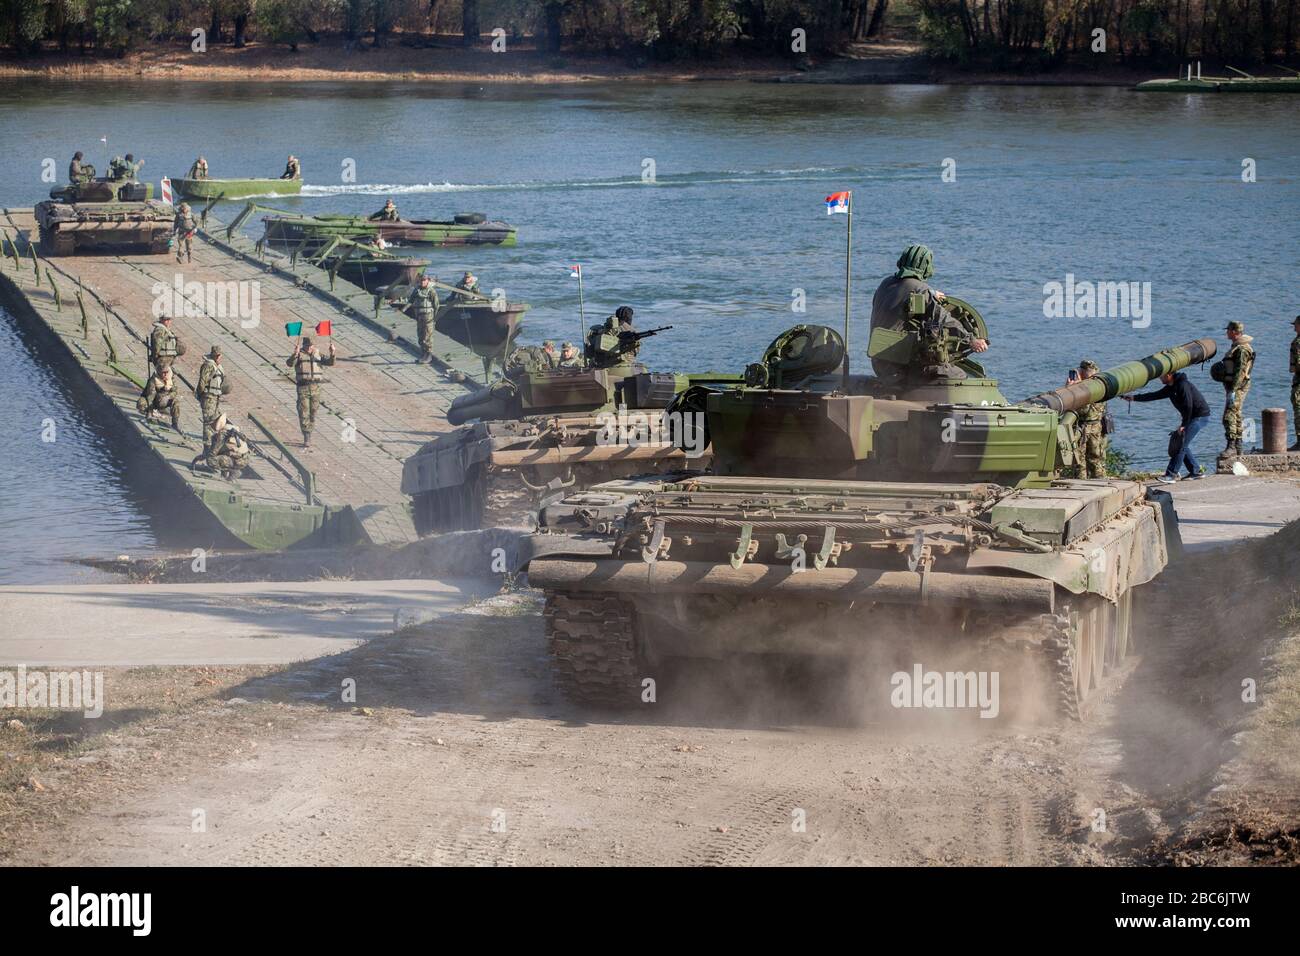 PRÈS DE TITEL, SERBIE - 06 NOVEMBRE 2018; le principal char de combat de l'armée serbe M84 (version de Soviet T-72) équipages pendant la flotte de rivière. La Serbie marquera le 100ème Banque D'Images